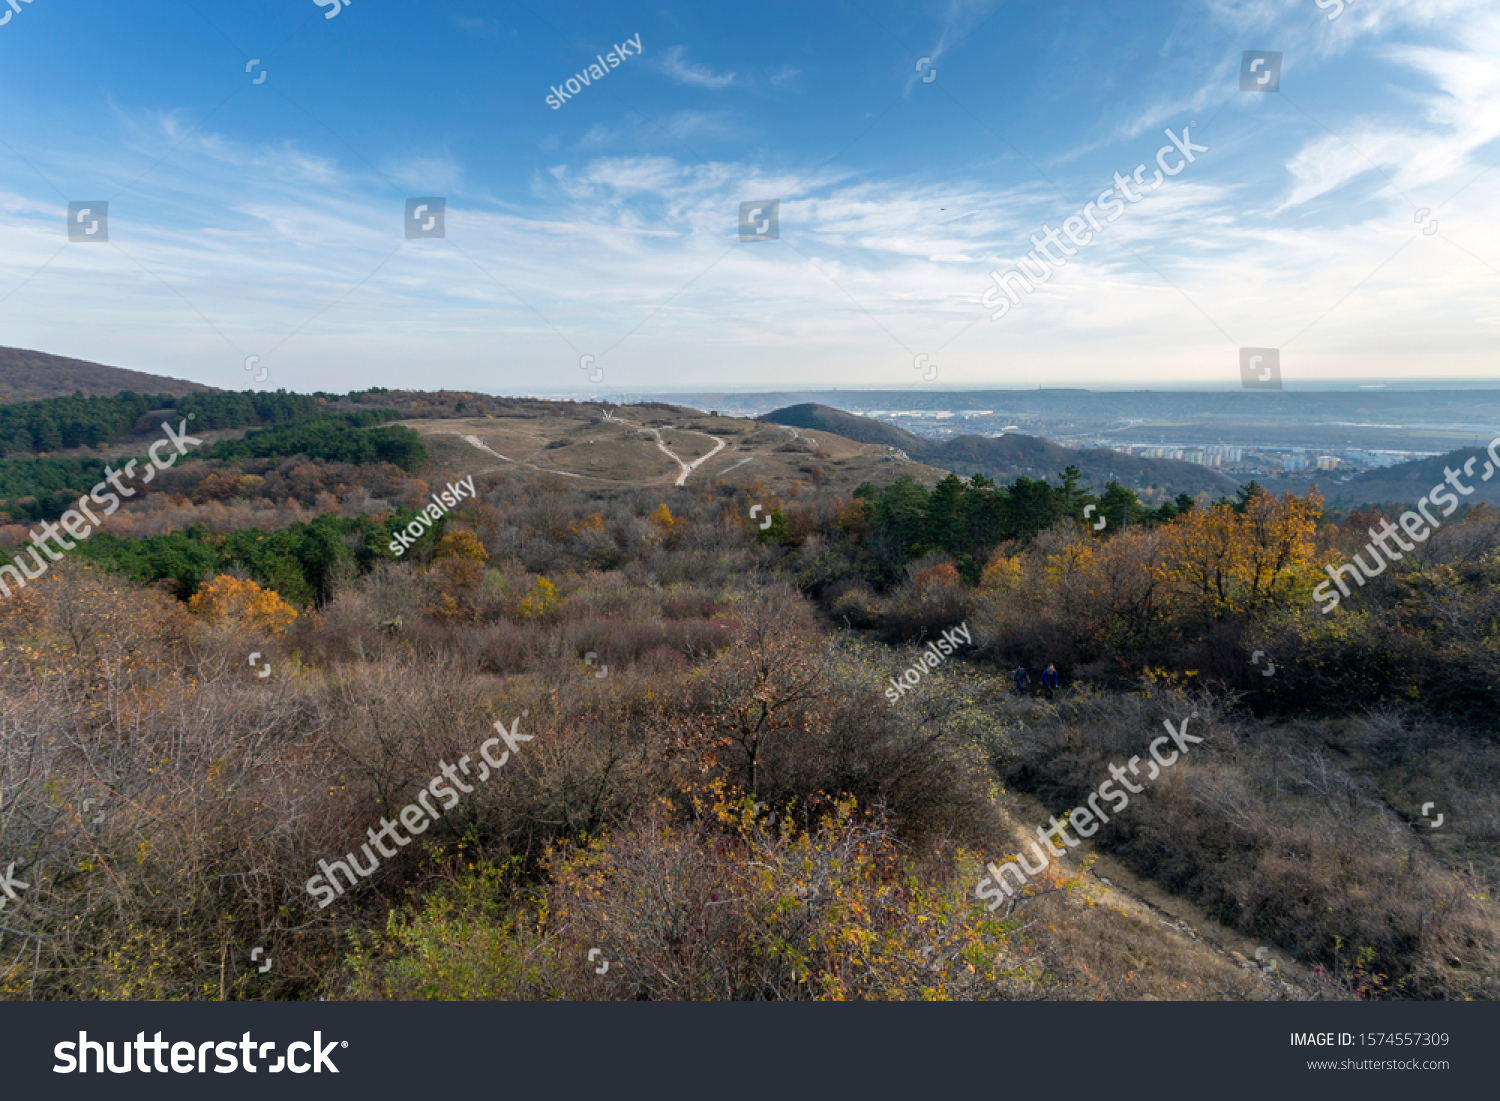 View of Buda mountains (Farkas-hegy) near Budaörs, Hungary on a sunny autumn day. #1574557309